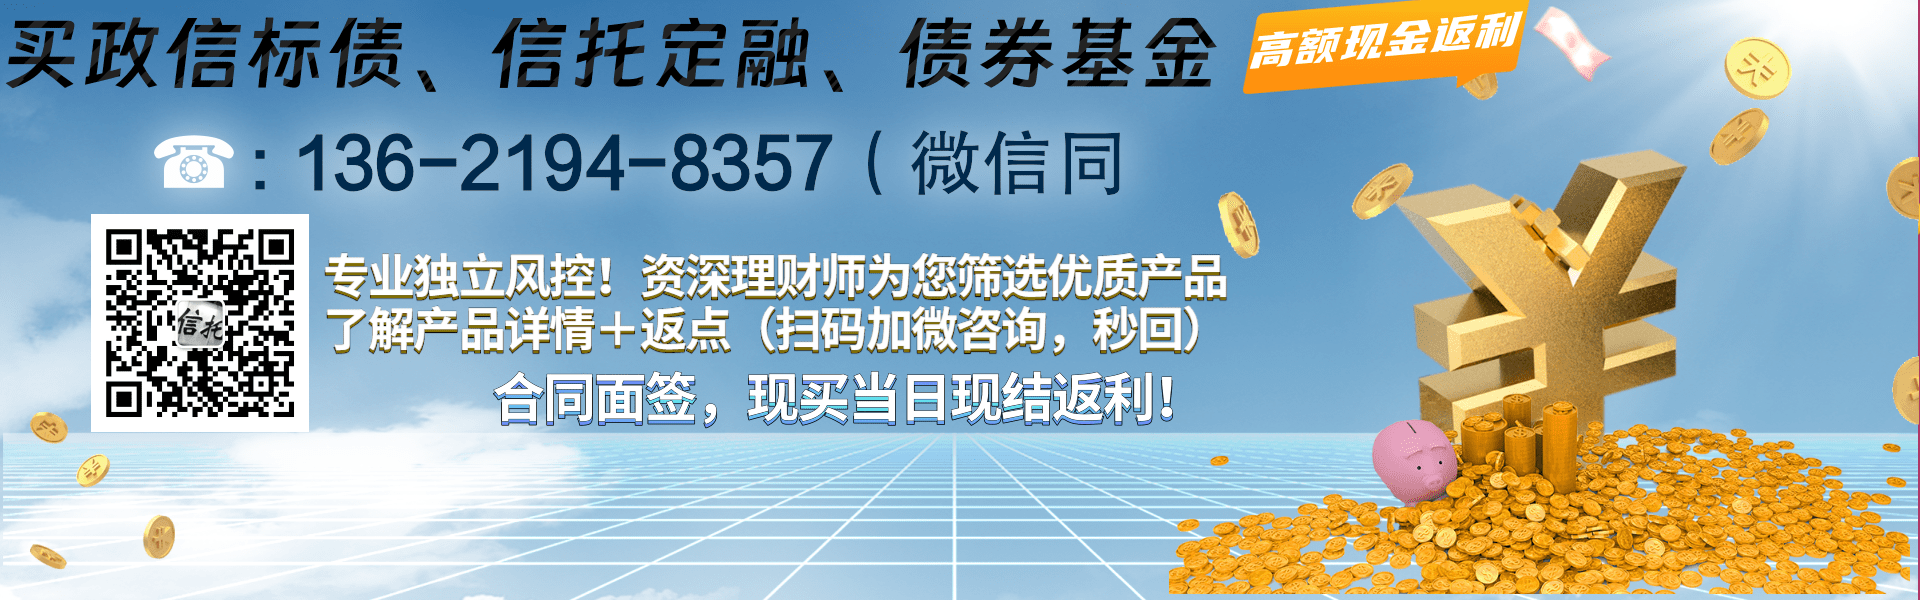 重庆九黎旅游控股债权资产项目2